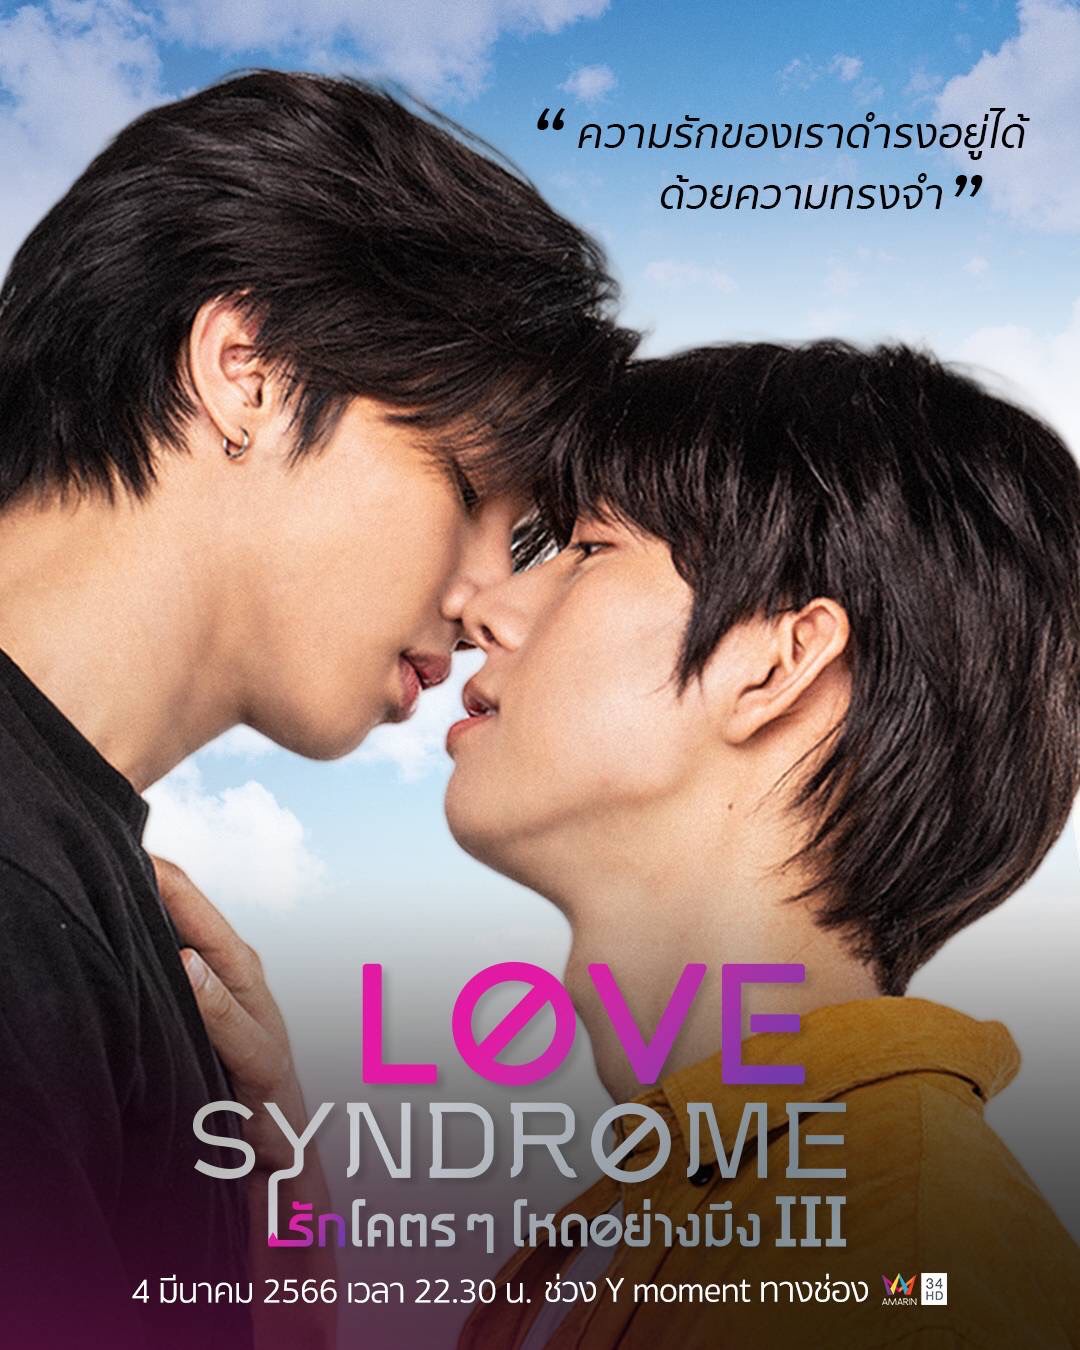 Love Syndrome III รักโคตรๆโหดอย่างมึง 3 ปล่อยตัวอย่างซีรีส์สนุกครบรส